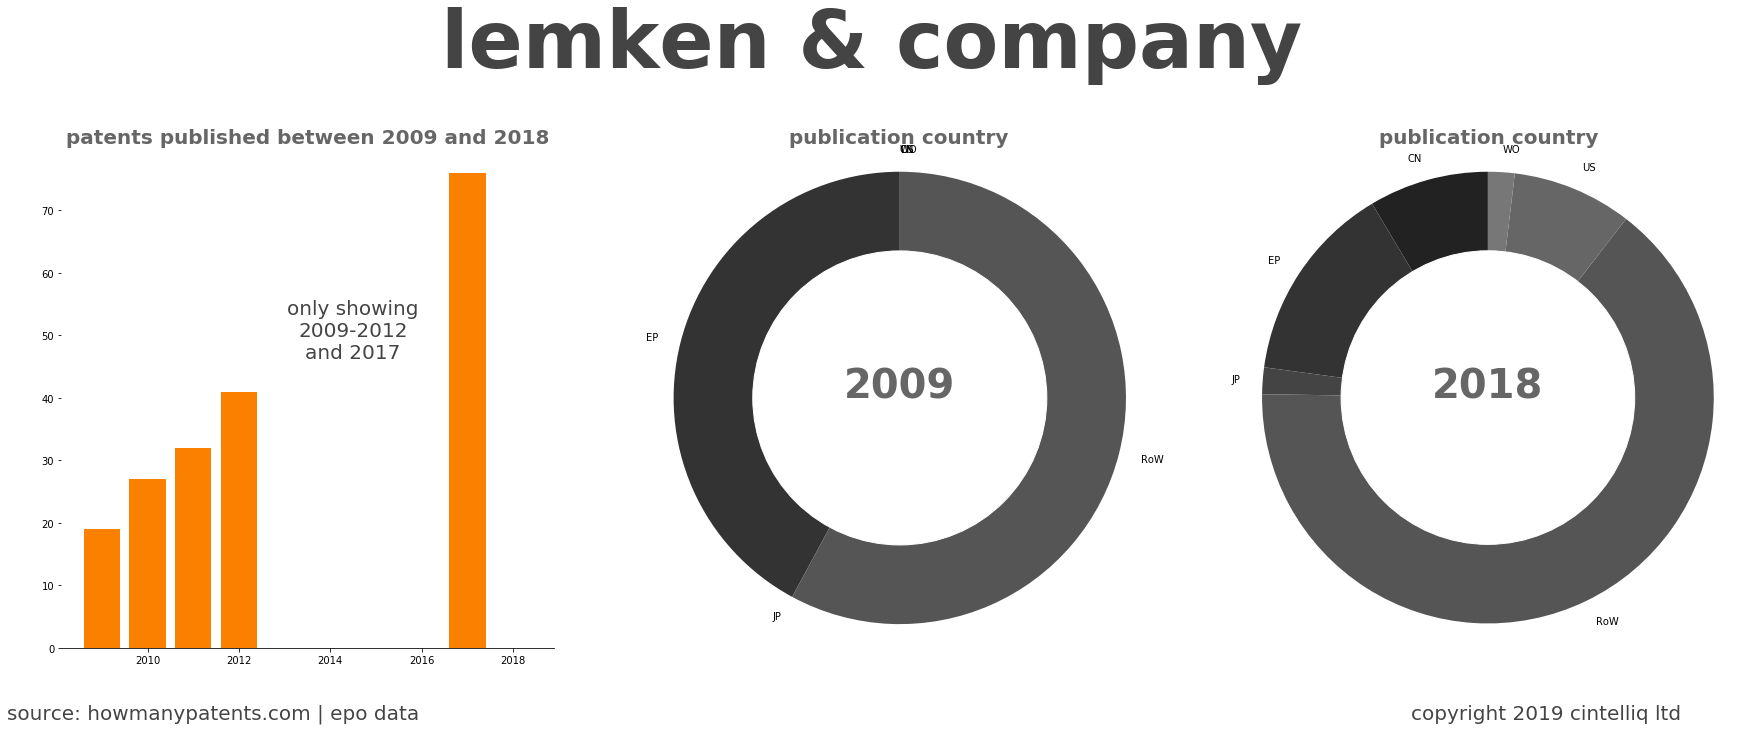 summary of patents for Lemken & Company